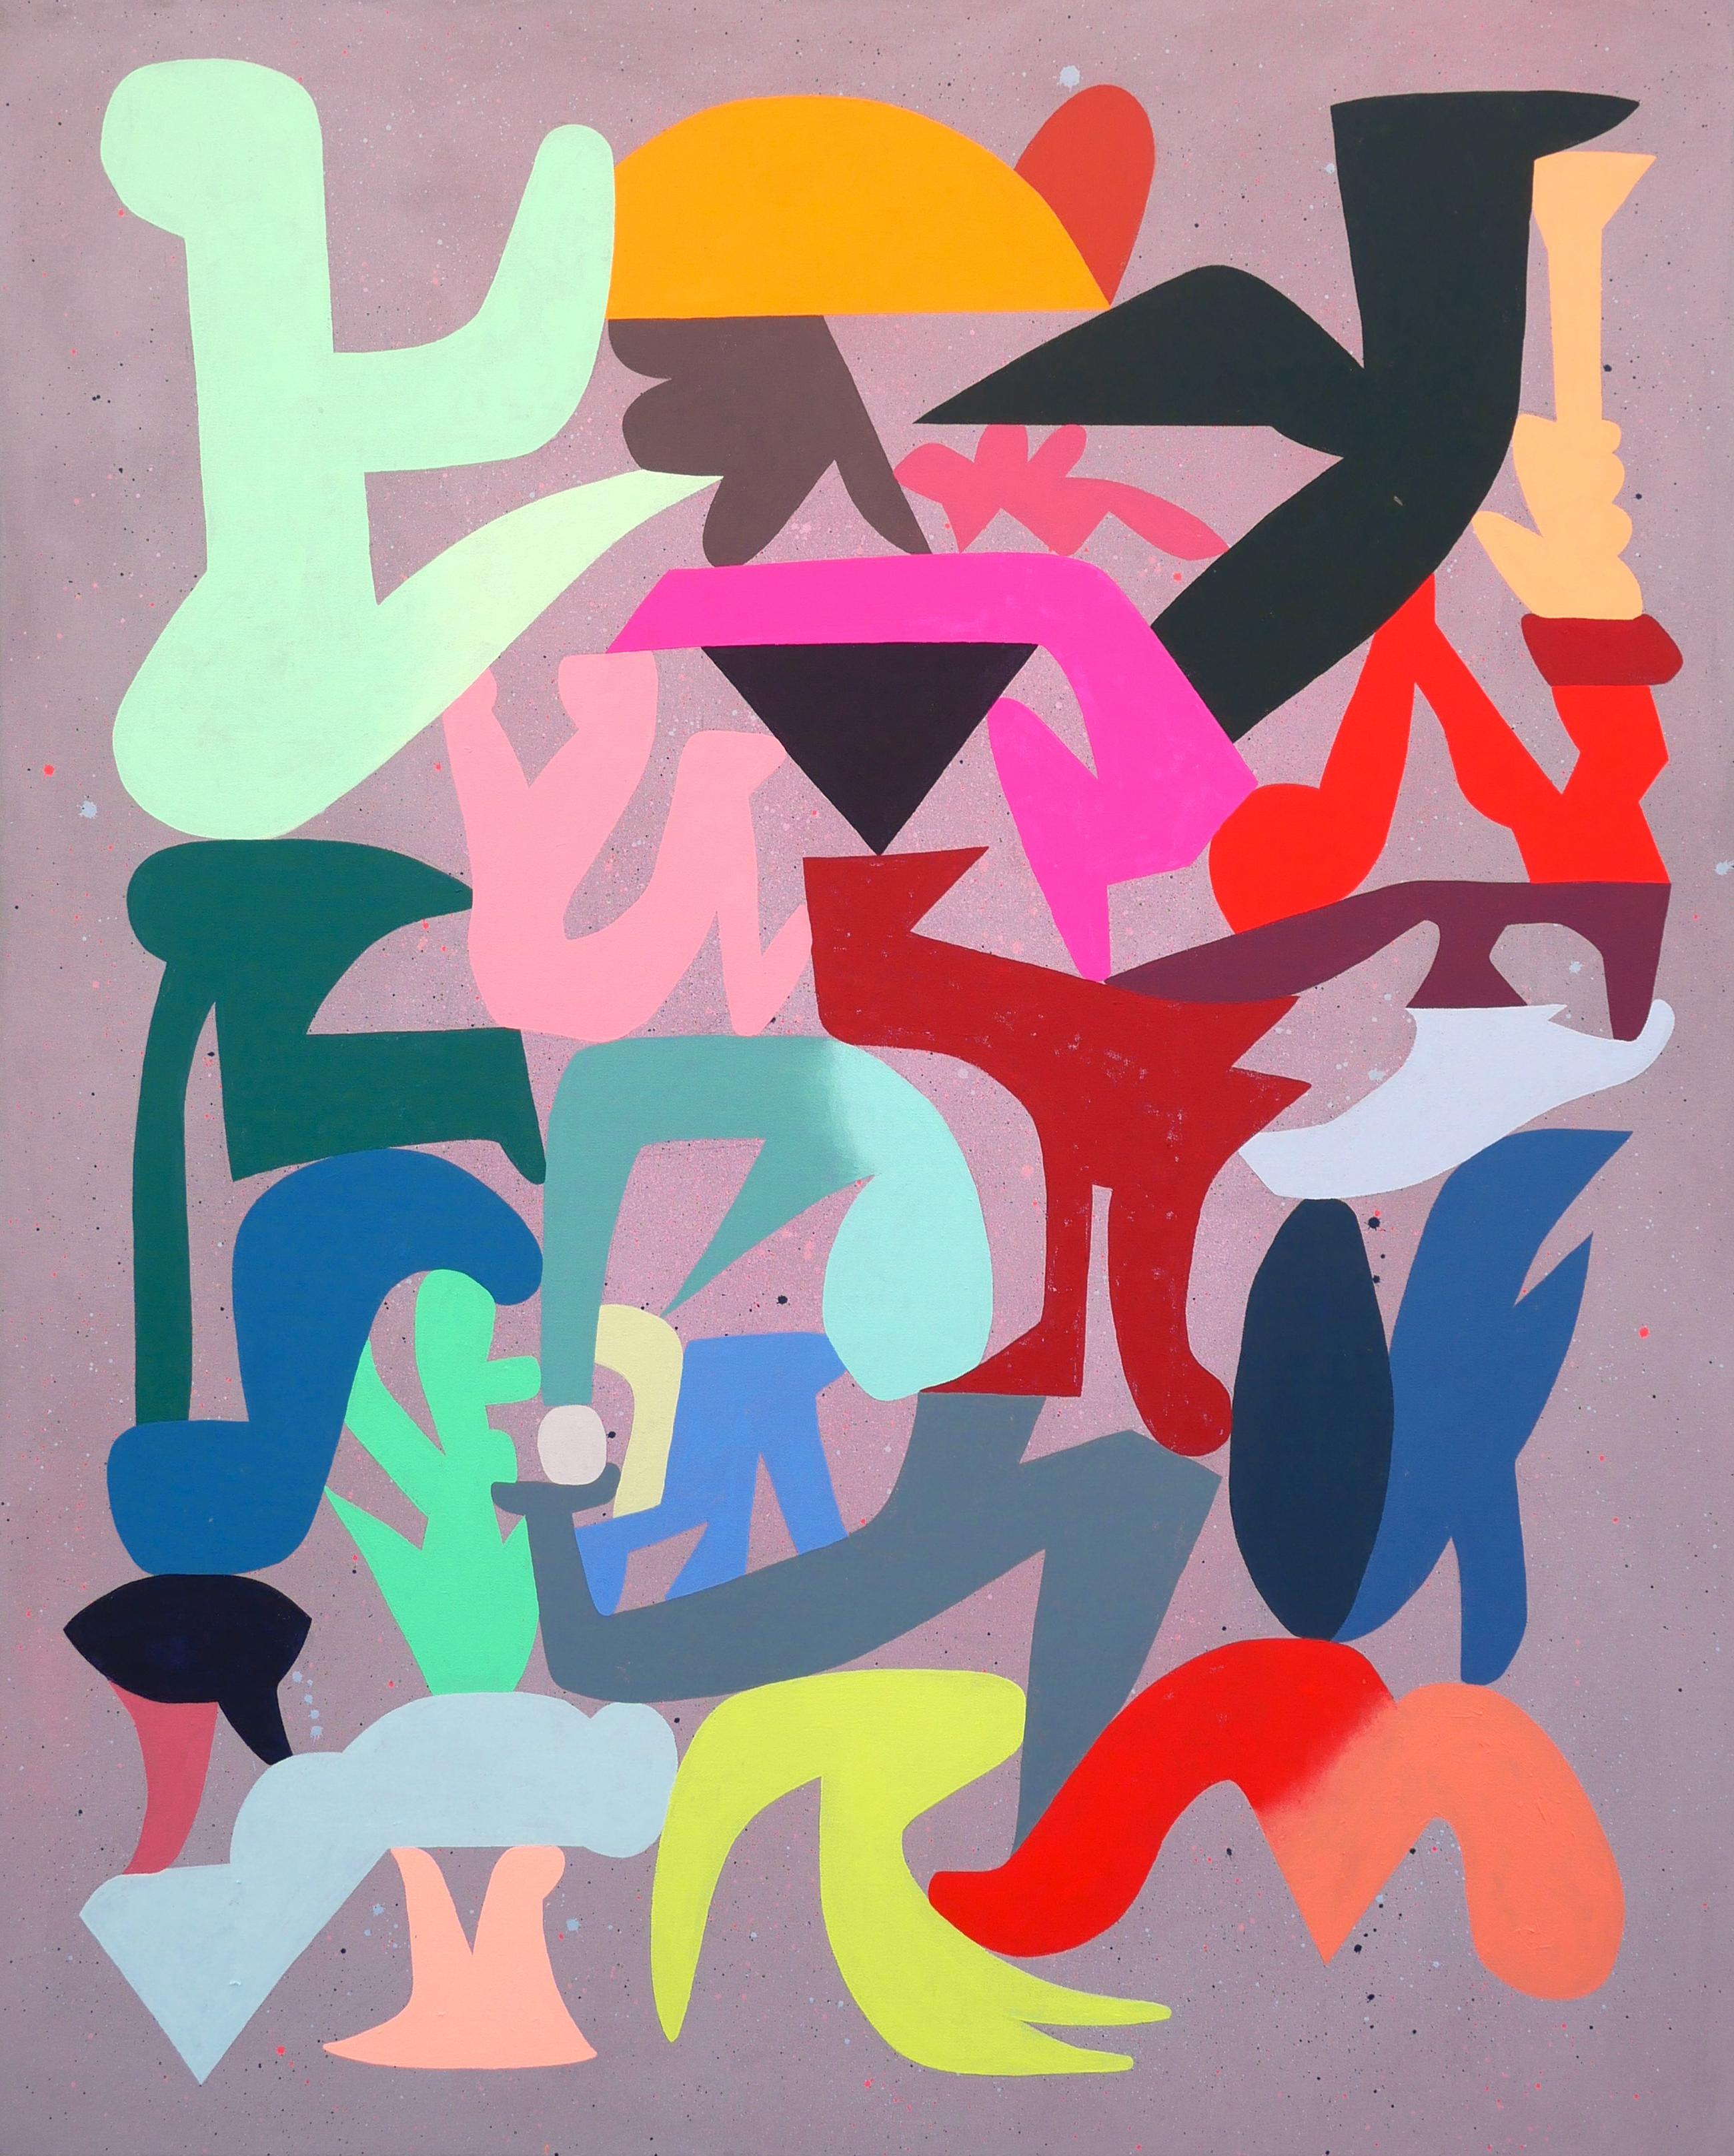 "Flock" Peinture contemporaine abstraite géométrique colorée et vibrante en tons de joyaux